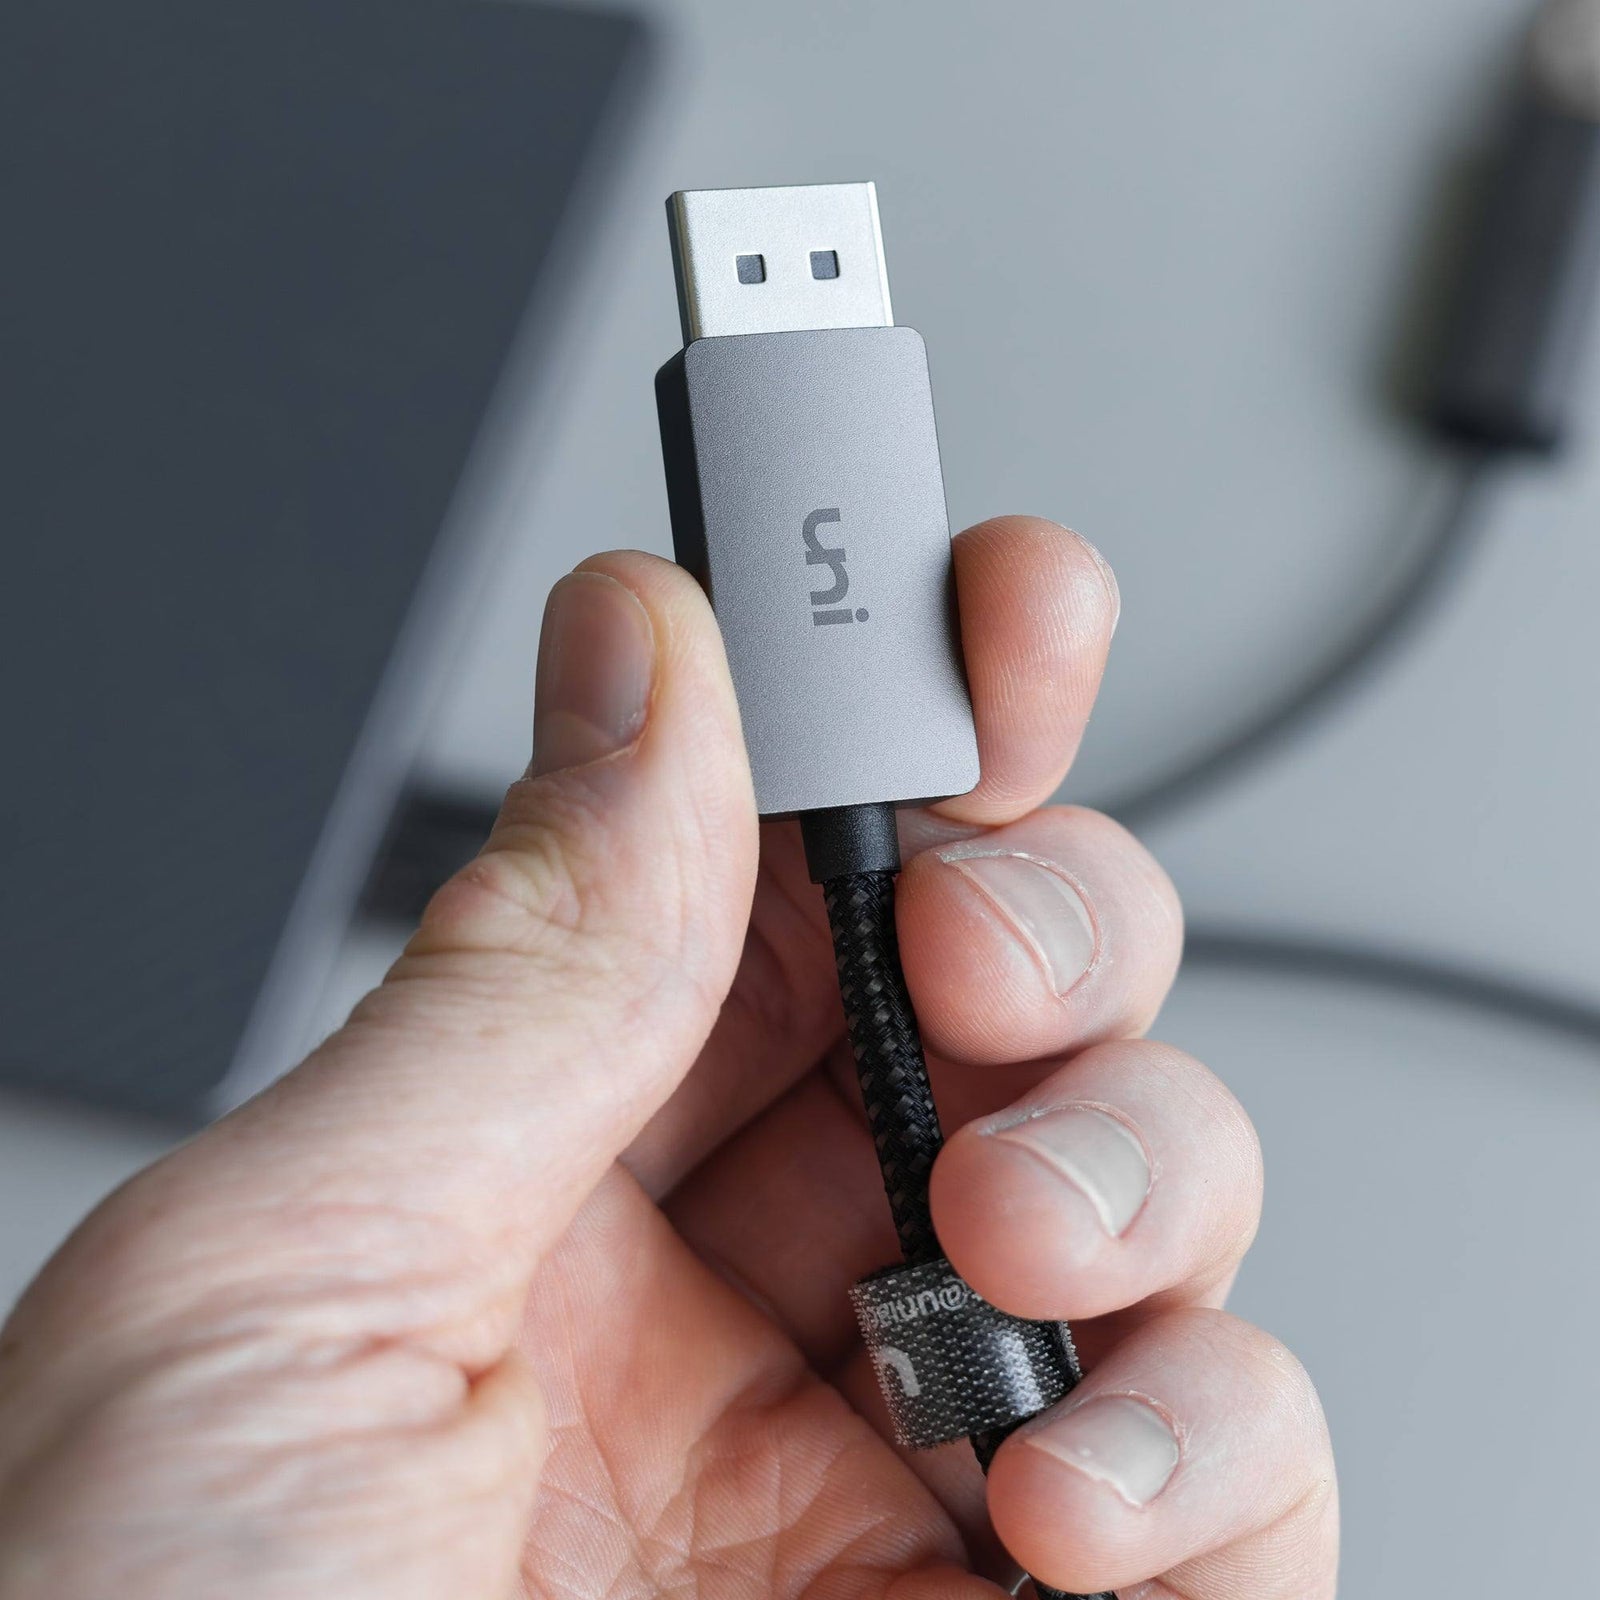 15% sur CABLING® Adaptateur USB C vers USB A 3.0 Connecteur USB